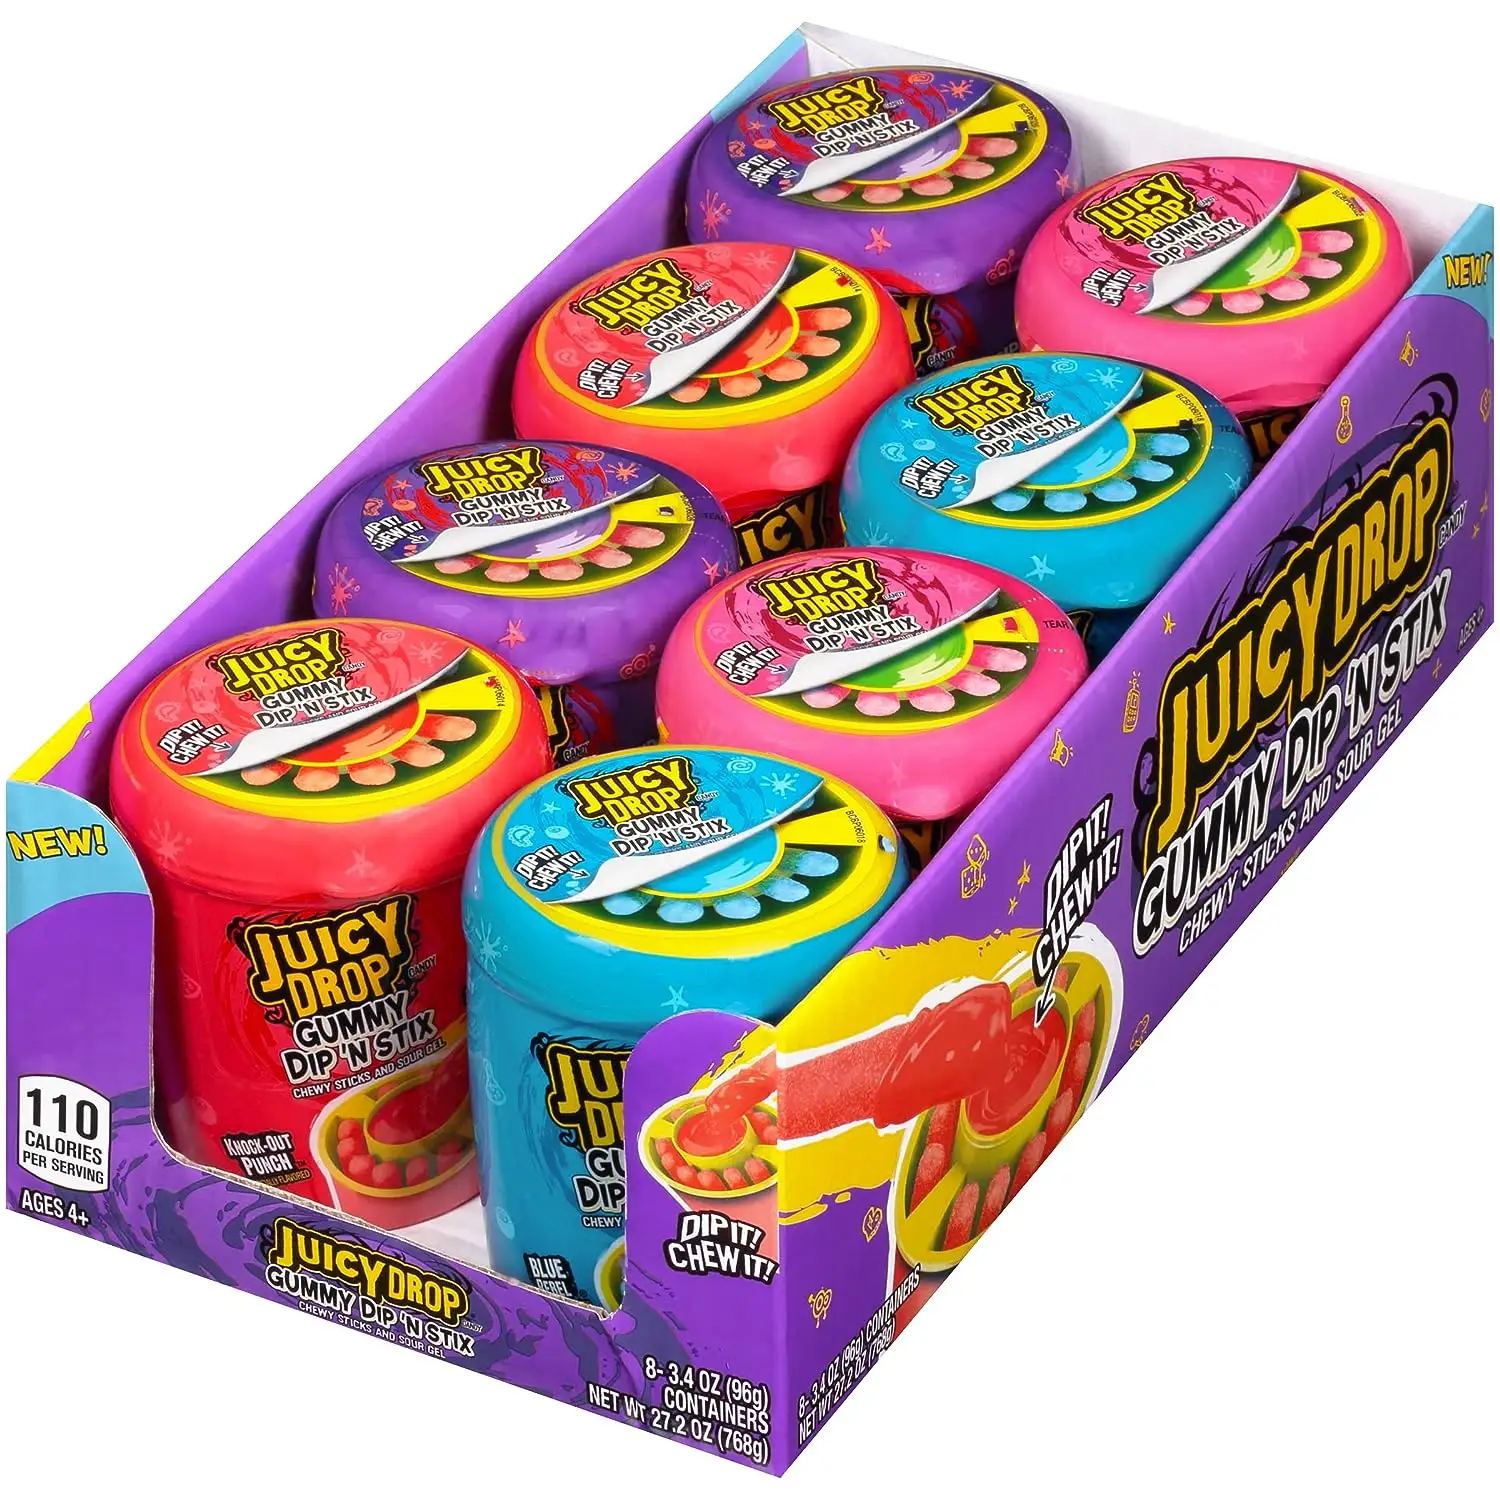 Juicy Drop Gummy Dip 'N Stix Sweet Gummy Sticks con gel de inmersión agria (paquete de 8) marcas americanas de dulces